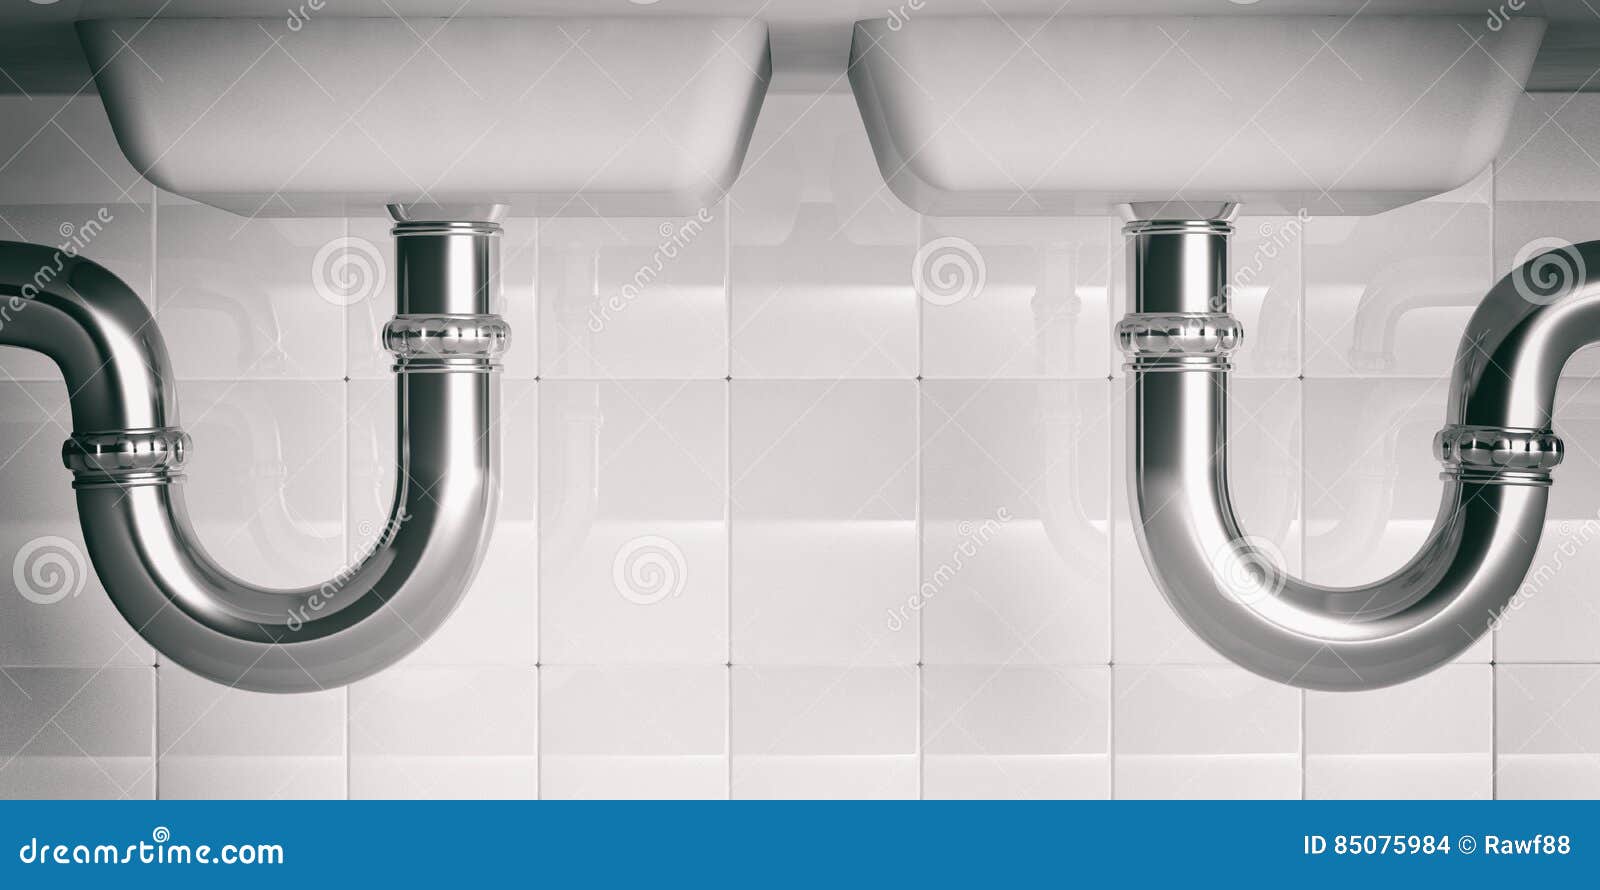 Conduites d'eau sous le double évier illustartion 3d. Conduites d'eau sous le double évier de cuisine illustartion 3d